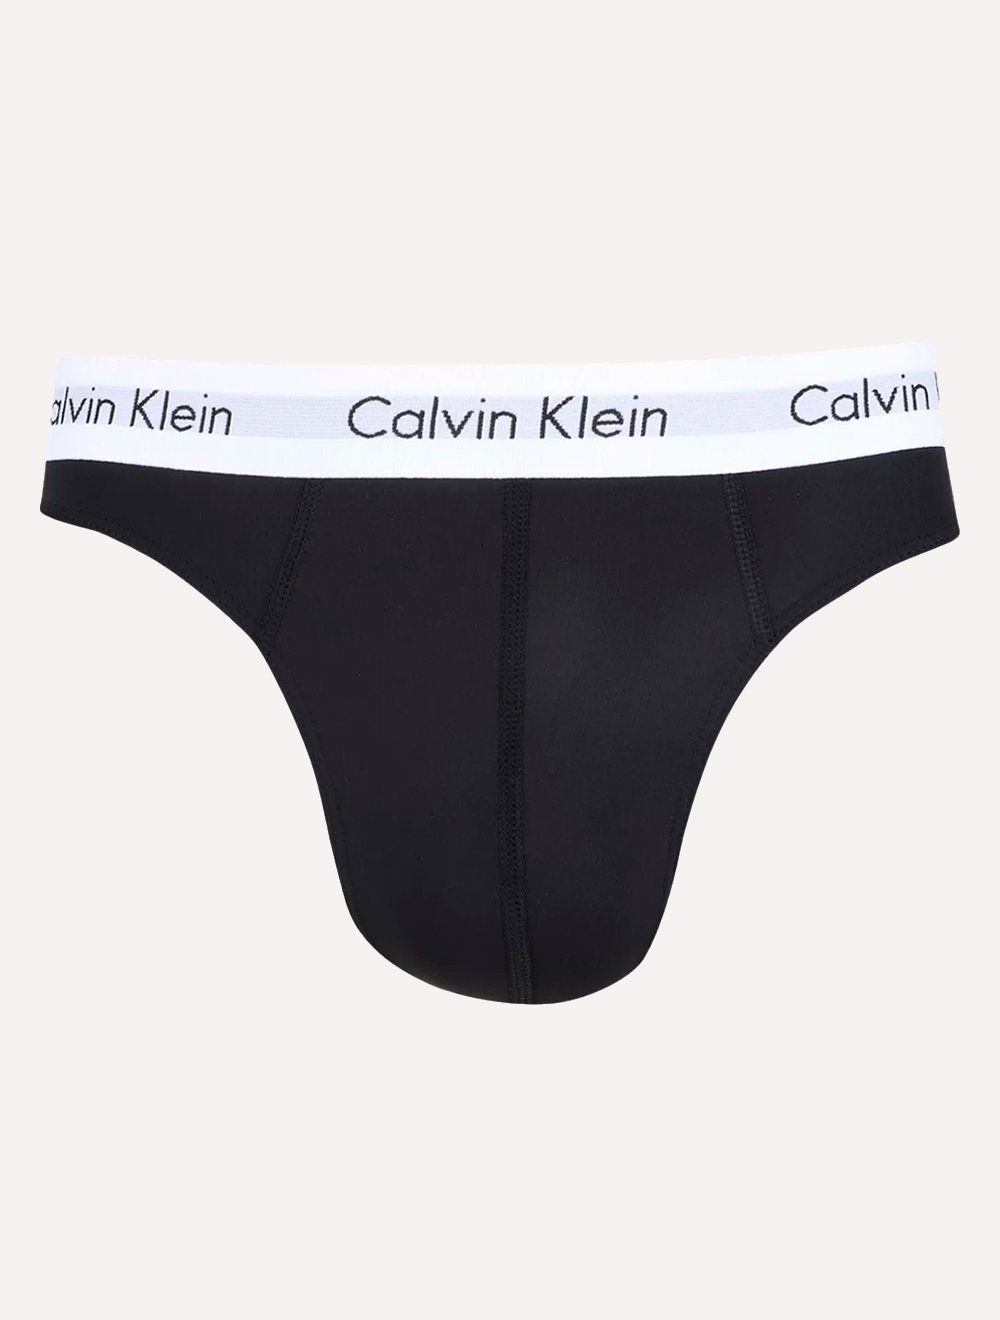 Cueca Calvin Klein Microfibra Fio Dental Thong Preta 1UN